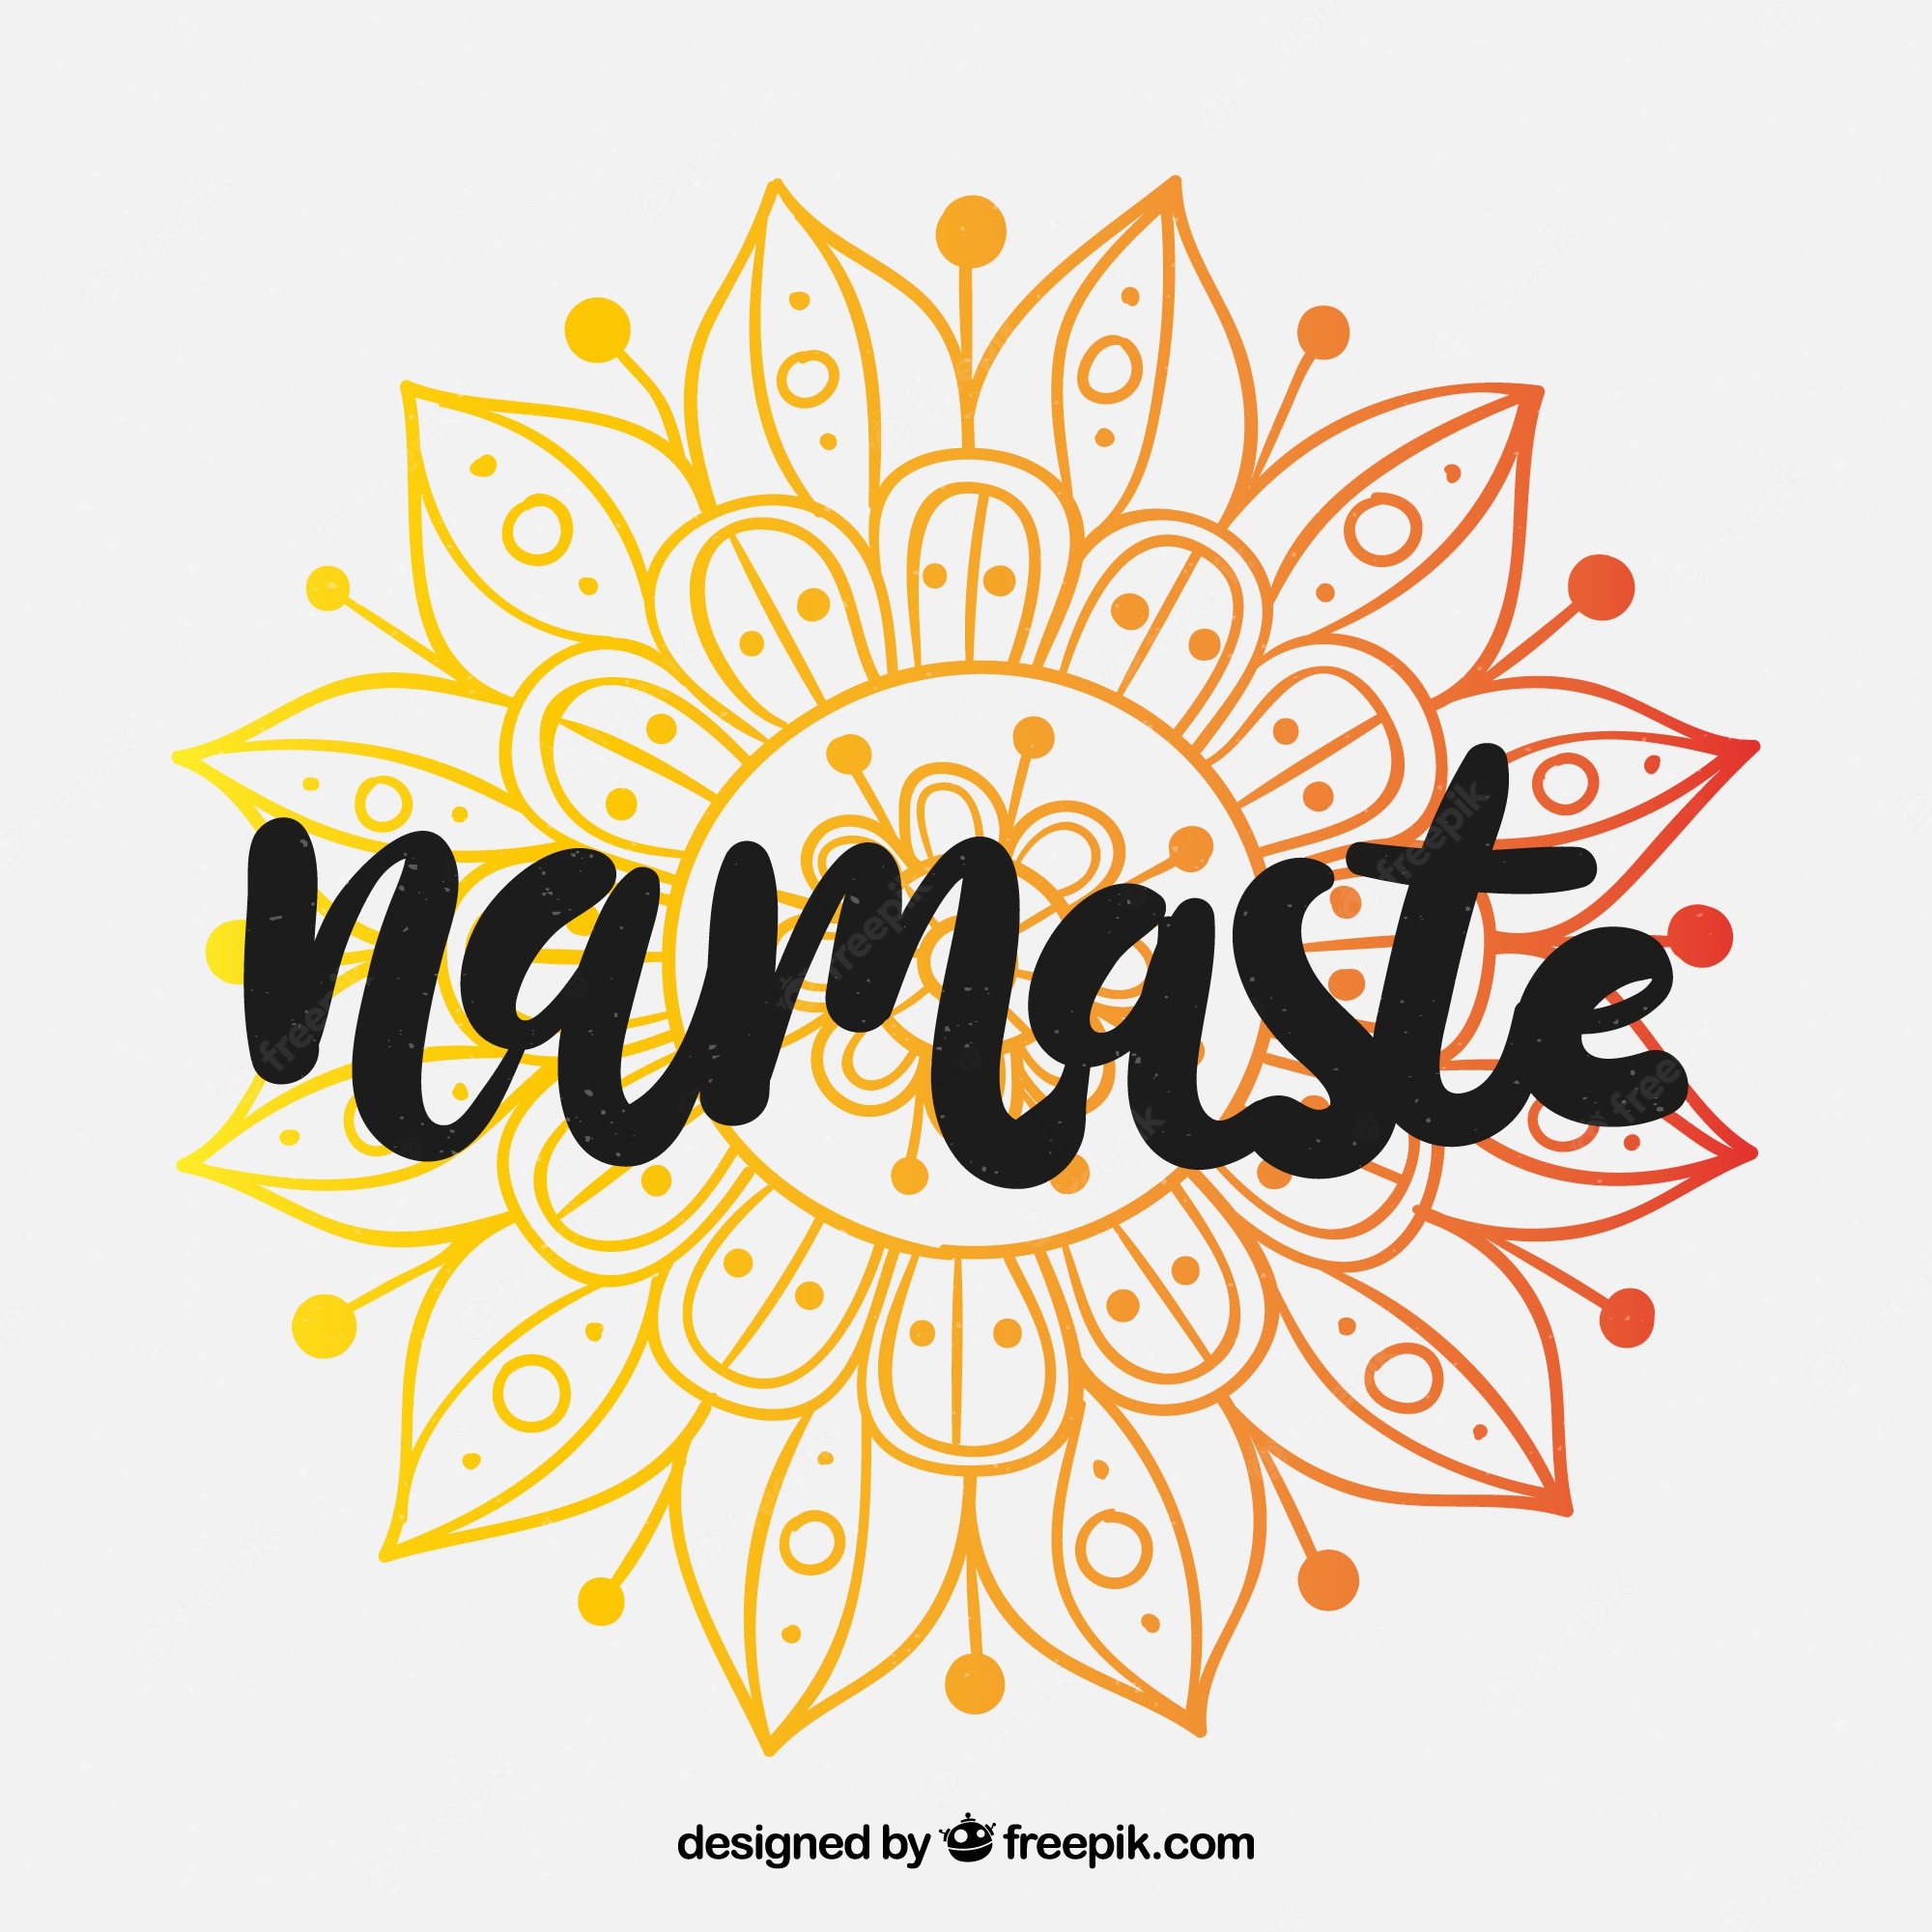 Namaste Wallpapers